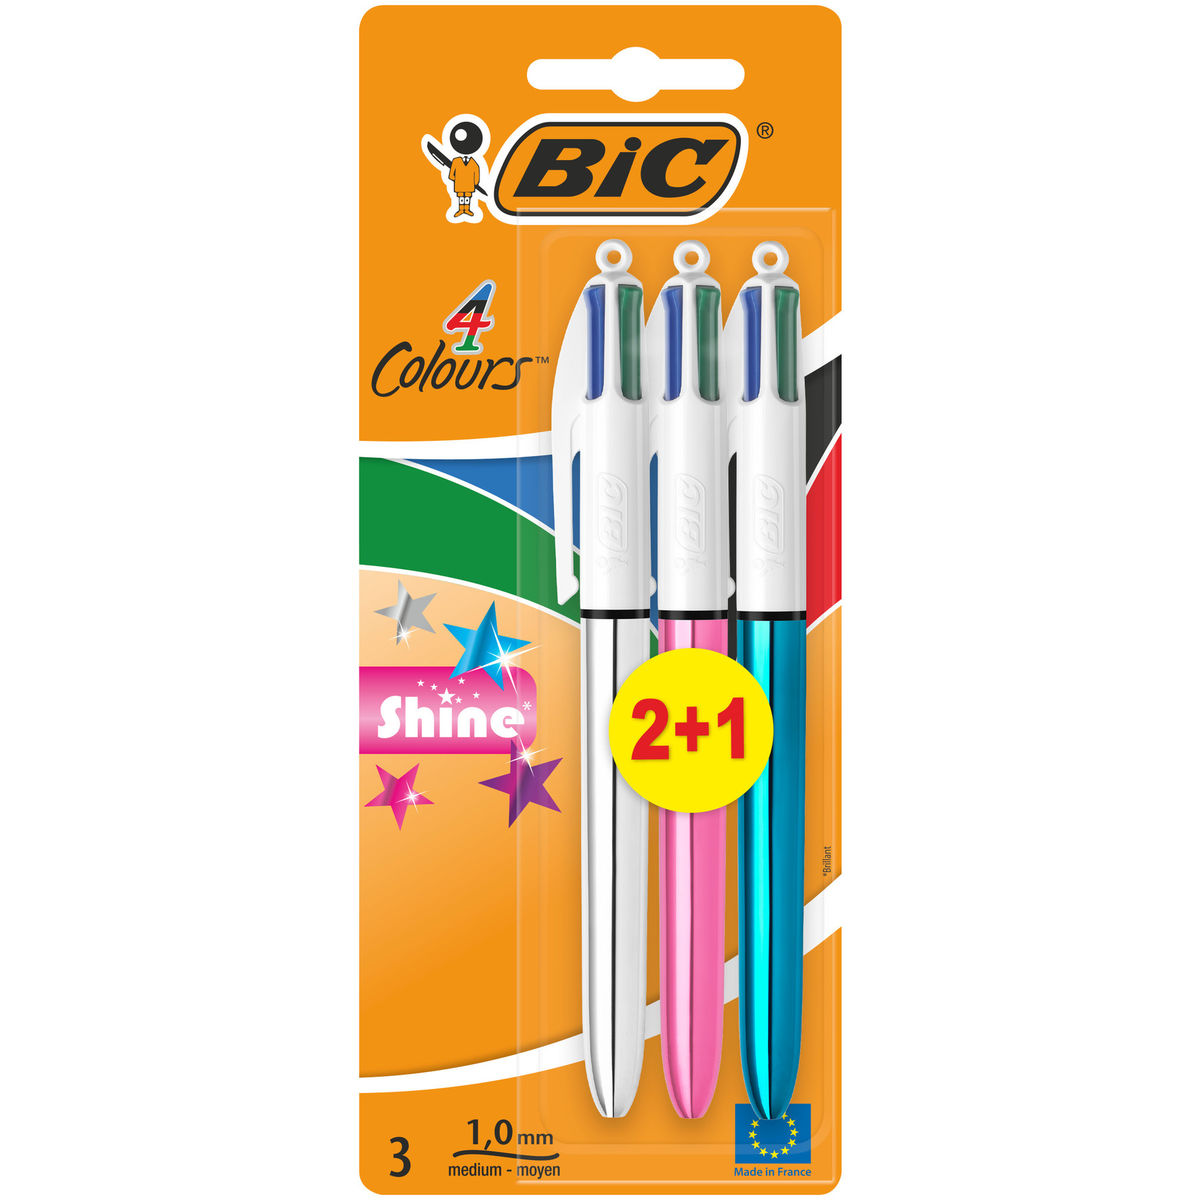 Bic 4 Colours stylo-bille rétractable 2+1 Shine